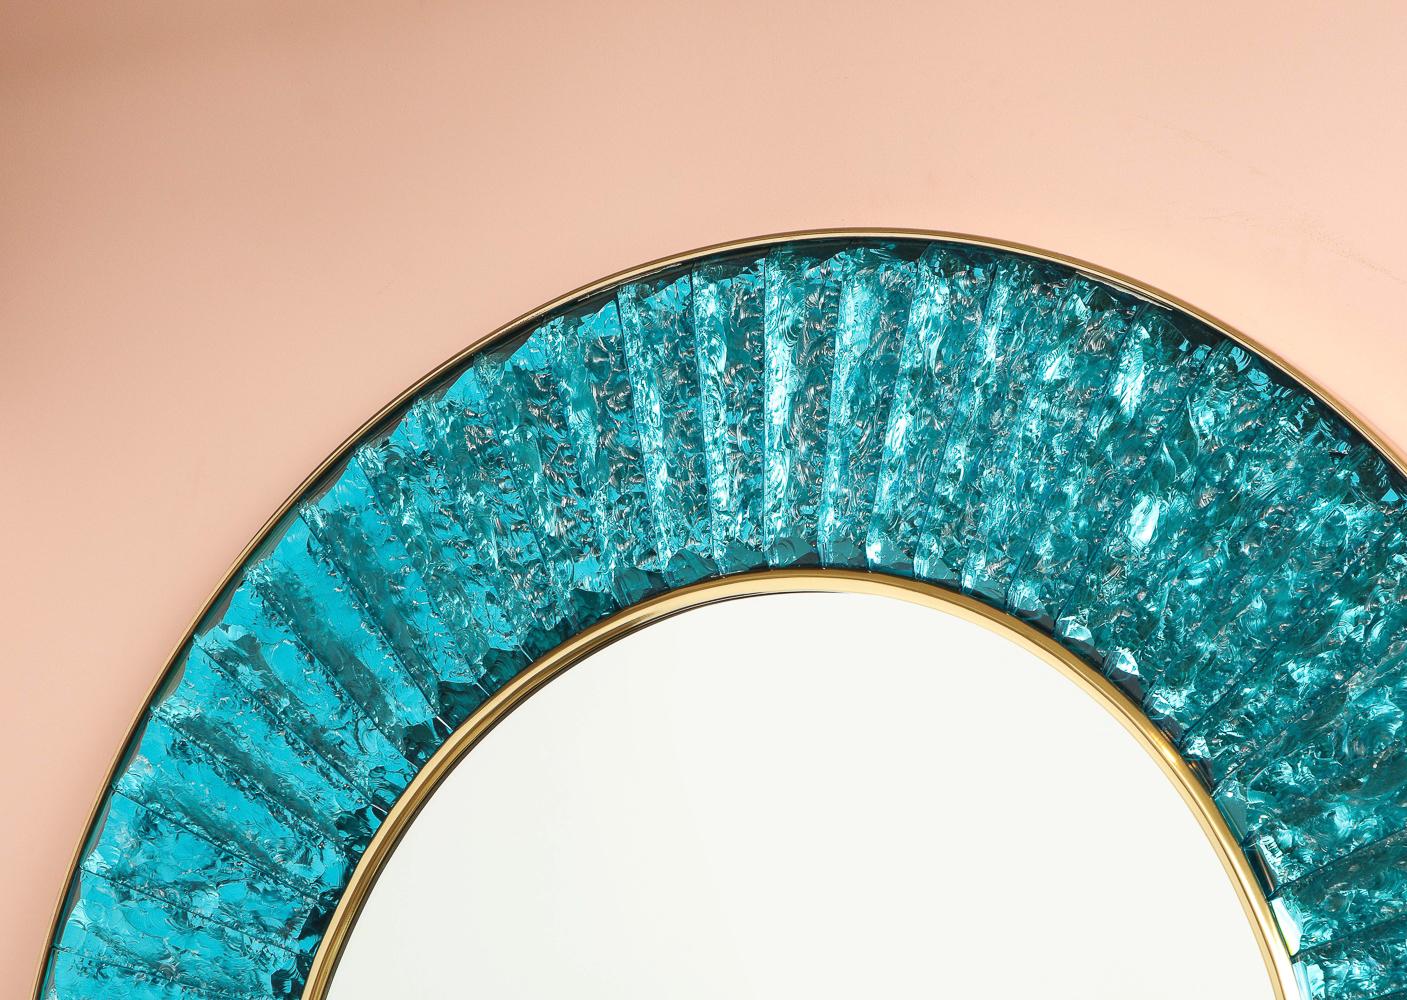 Zeitgenössischer Wandspiegel aus handgeschliffenen und gesplitterten türkisgrünen Glasbrocken. In einem Kreis um einen zentralen Spiegel mit Messingbeschlägen angeordnet. Ein wunderschönes Stück aus dem Studio, das exklusiv für Donzella angefertigt